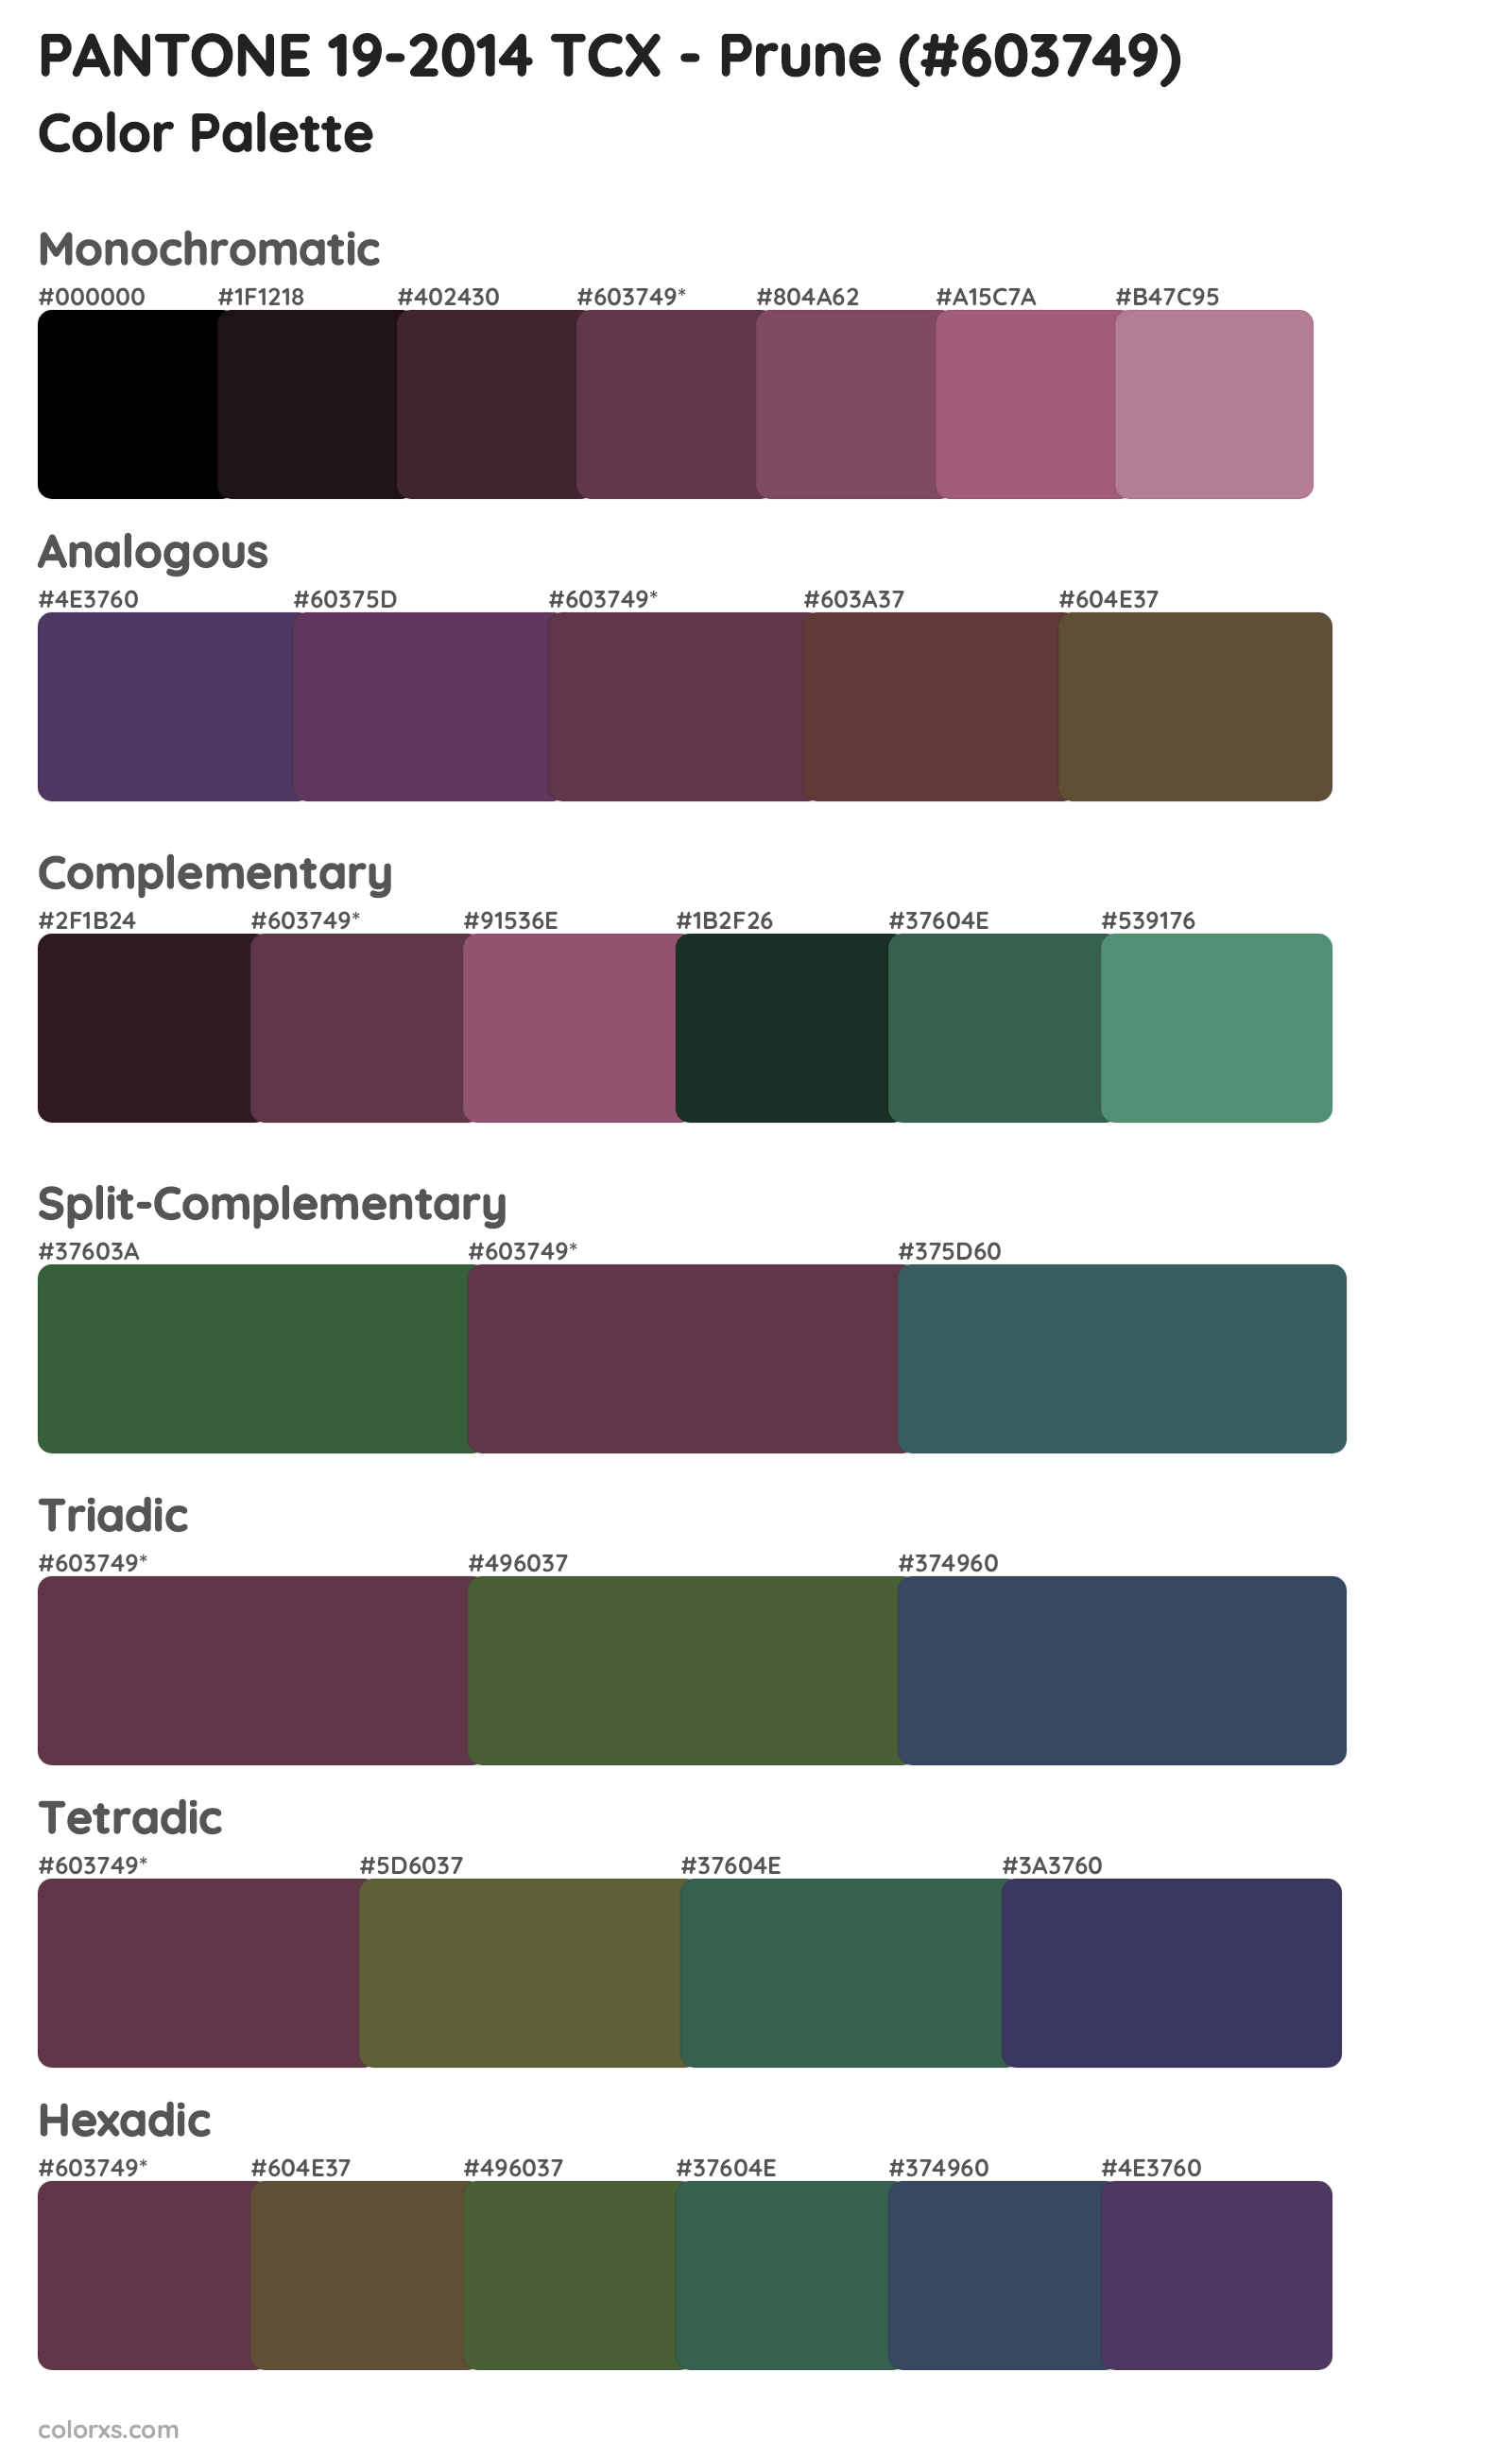 PANTONE 19-2014 TCX - Prune Color Scheme Palettes